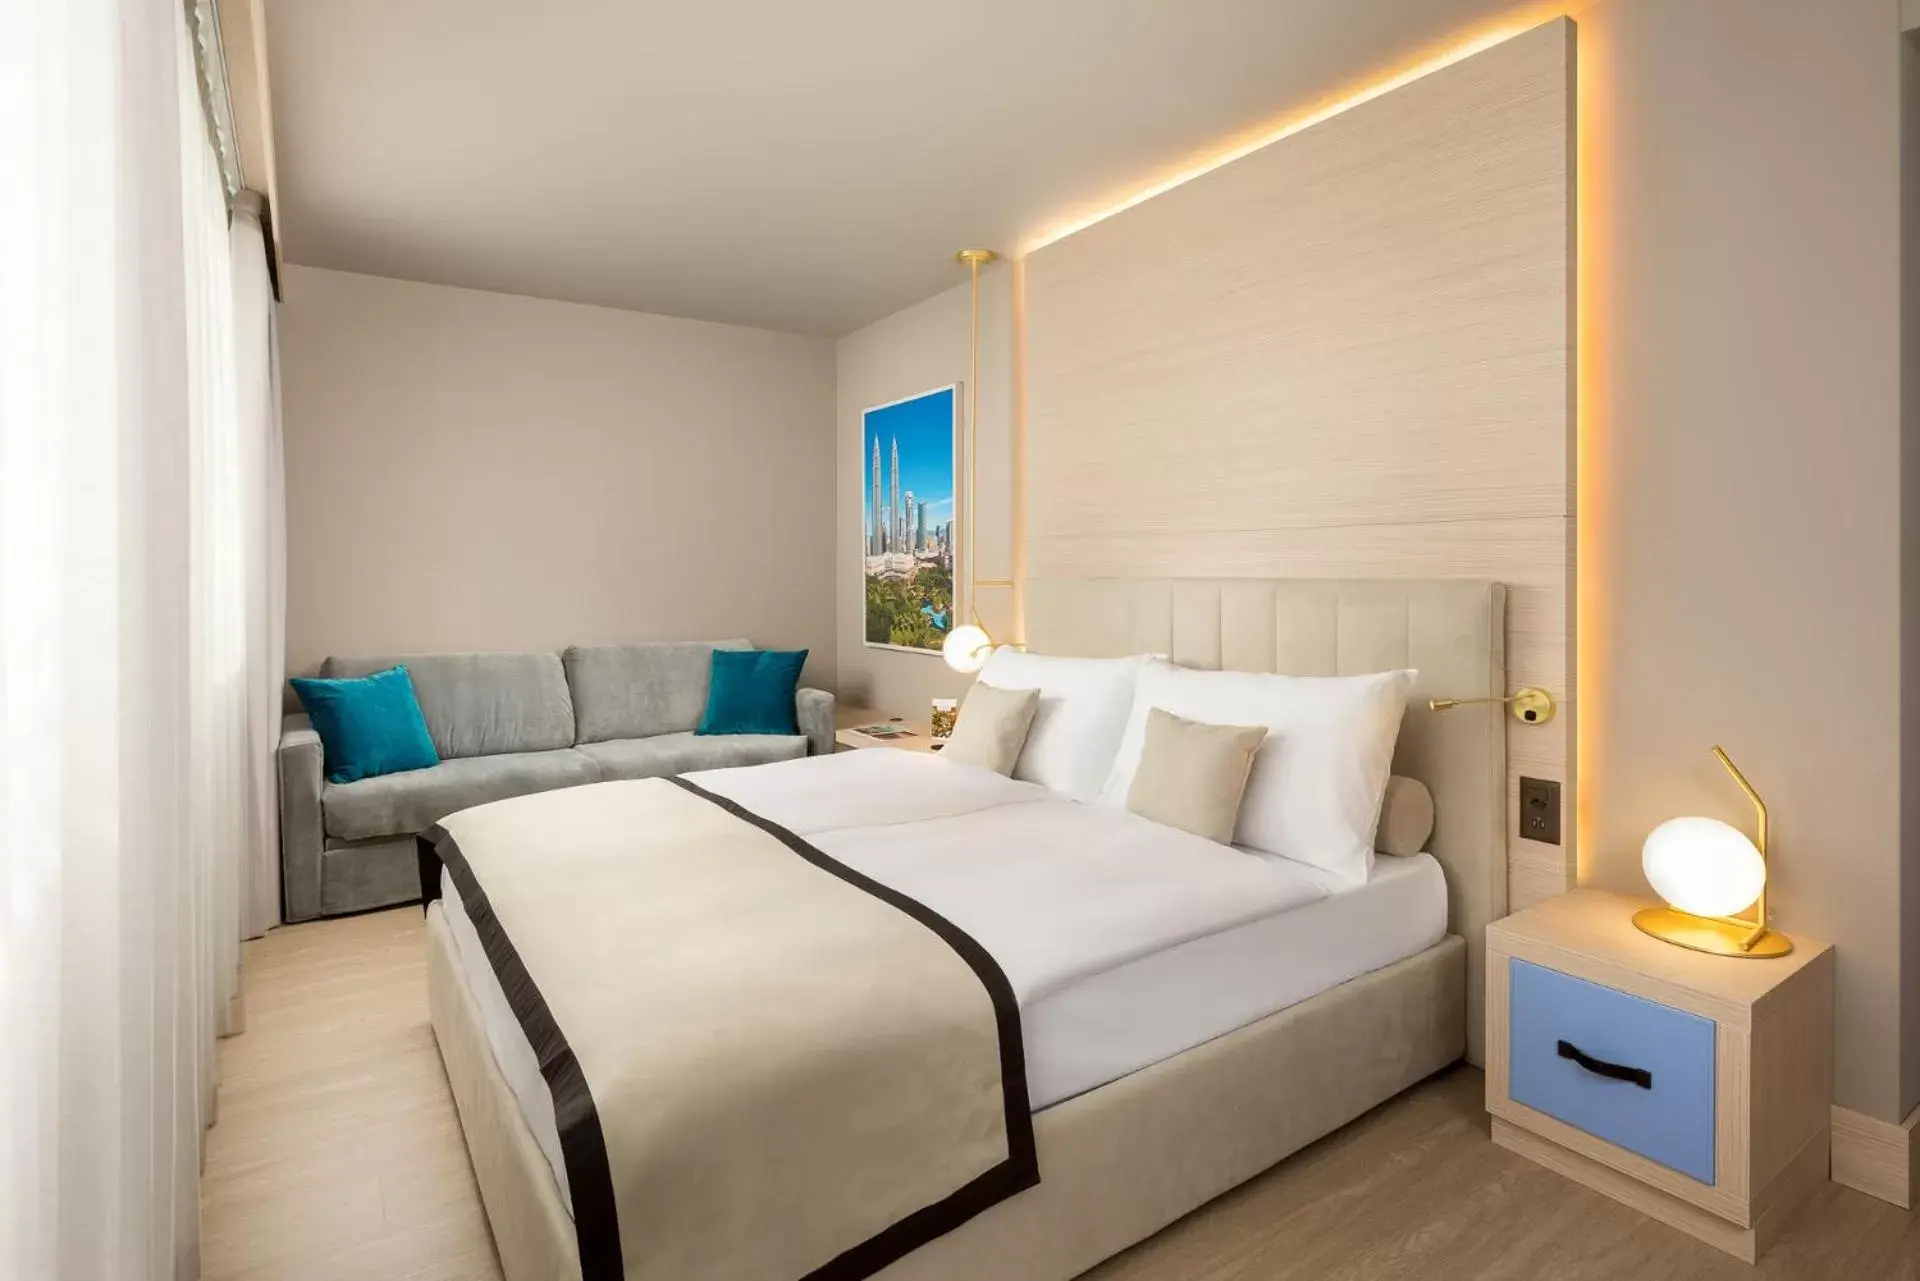 Room Photo in Hotel Vatel 4* Superior